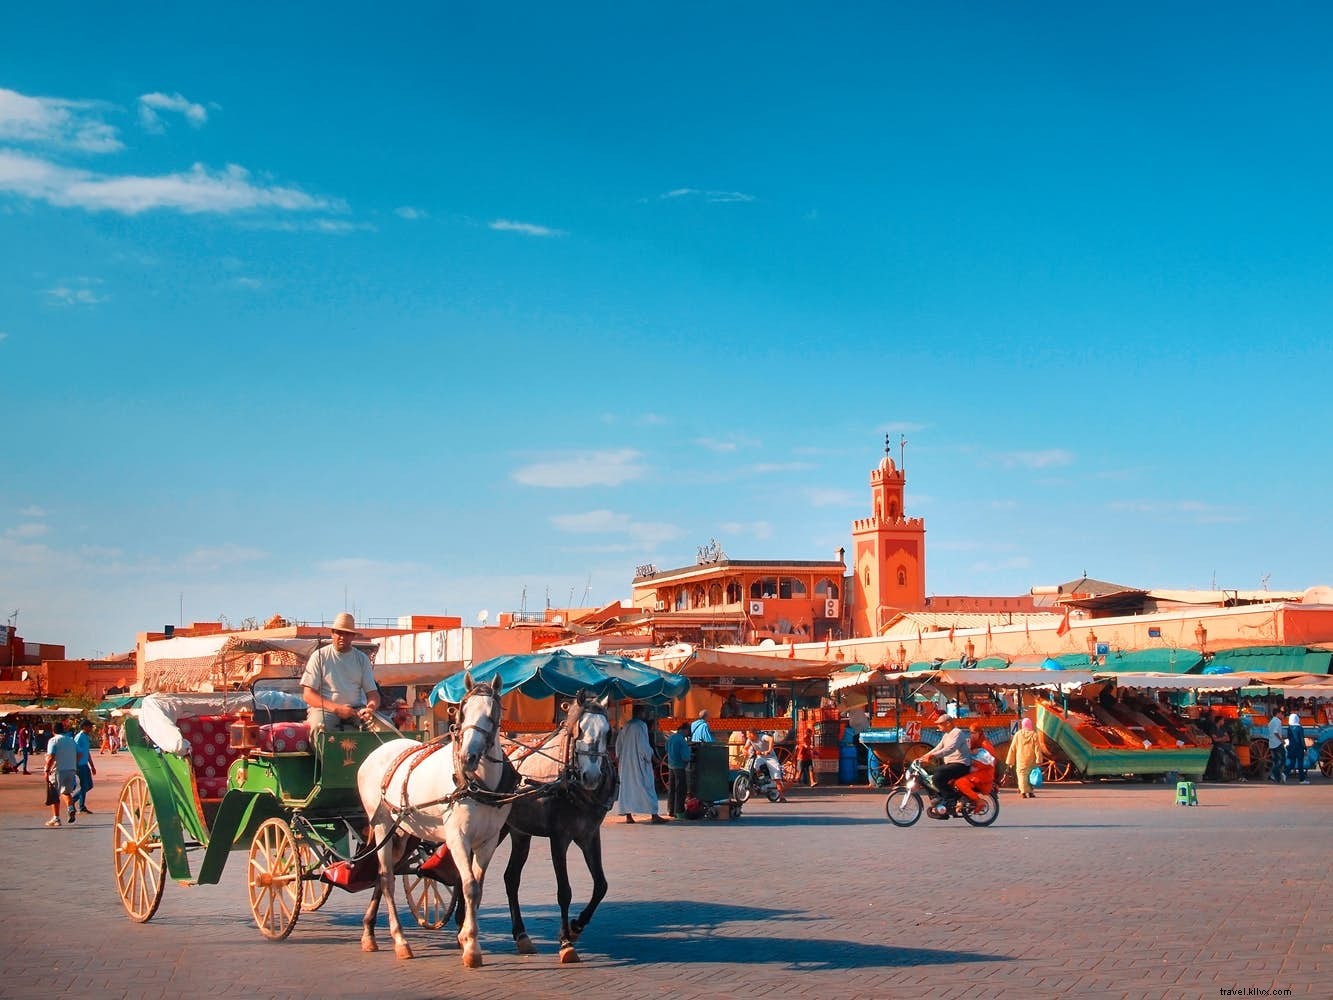 Une journée dans la vie de la place Djemaa El Fna de Marrakech 